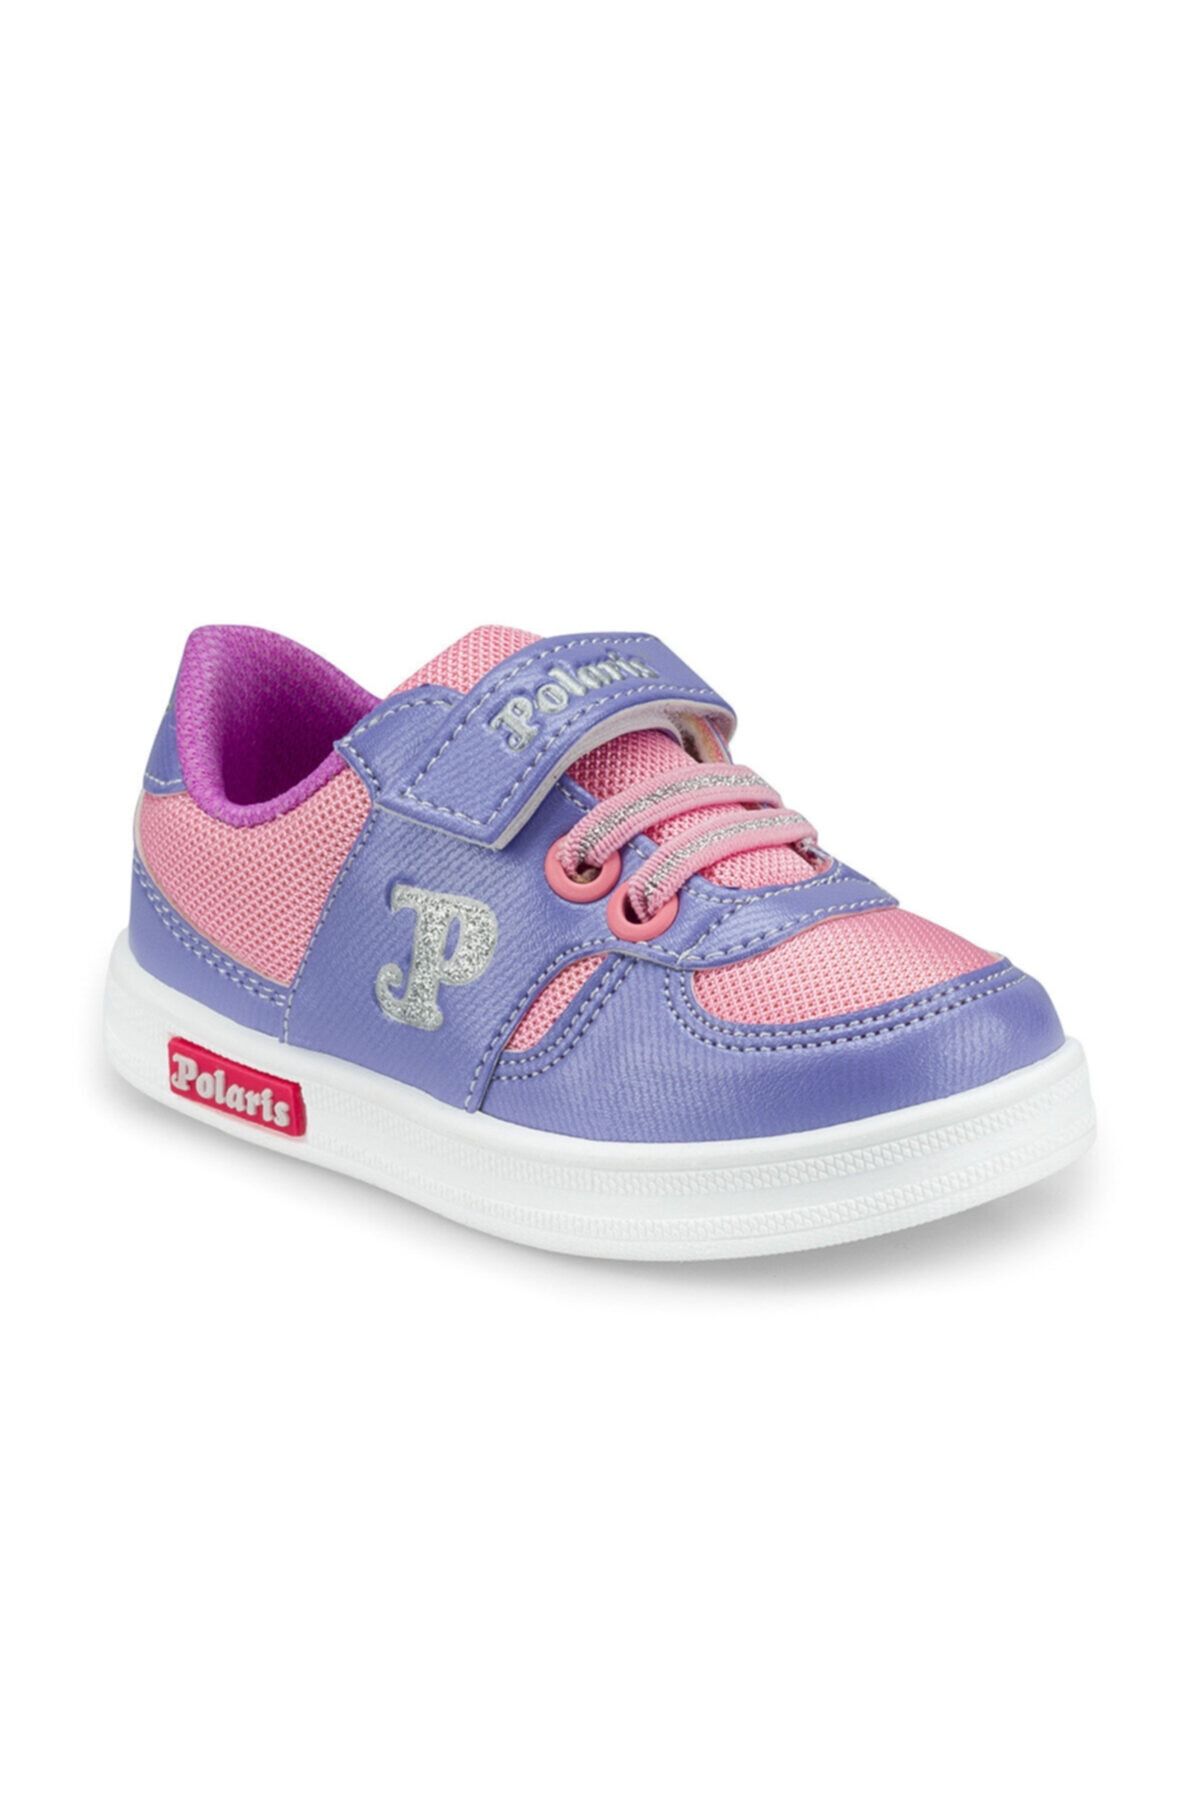 Polaris 512257.b Mor Kız Çocuk Sneaker